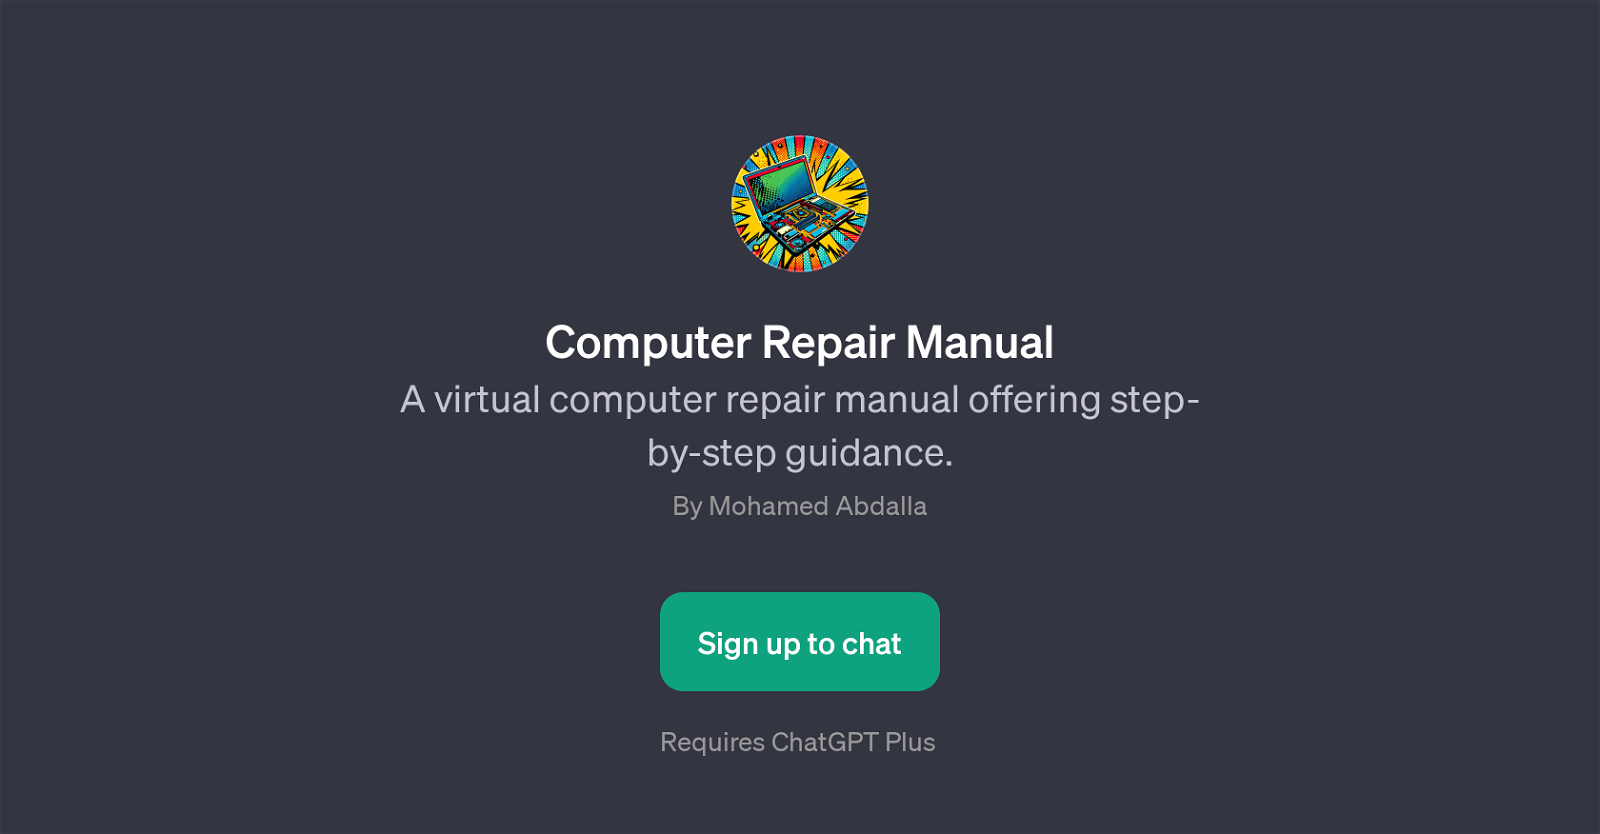 Computer Repair Manual website